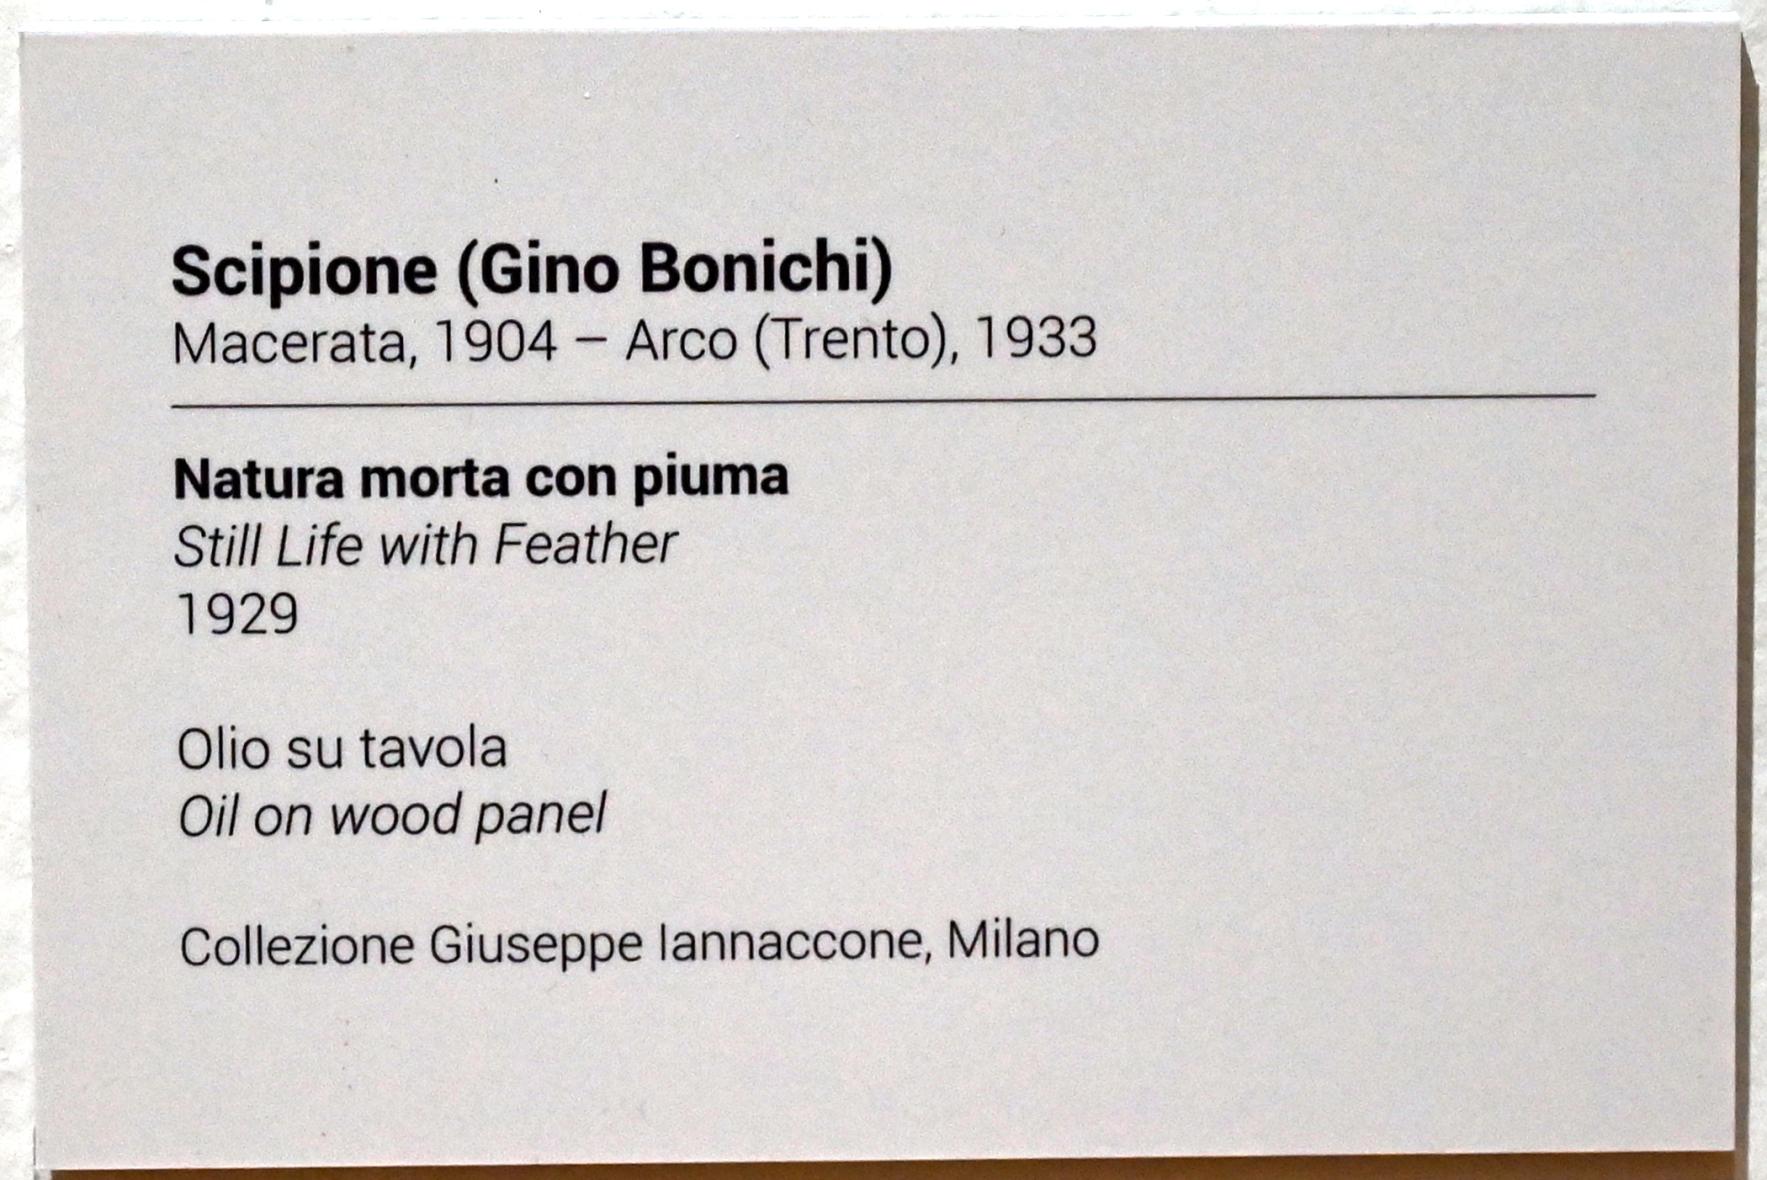 Scipione  (Gino Bonichi) (1929–1930), Stillleben mit Feder, Turin, GAM Torino, Ausstellung "Eine Reise gegen den Strom" vom 05.05.-12.09.2021, Saal 5, 1929, Bild 2/2